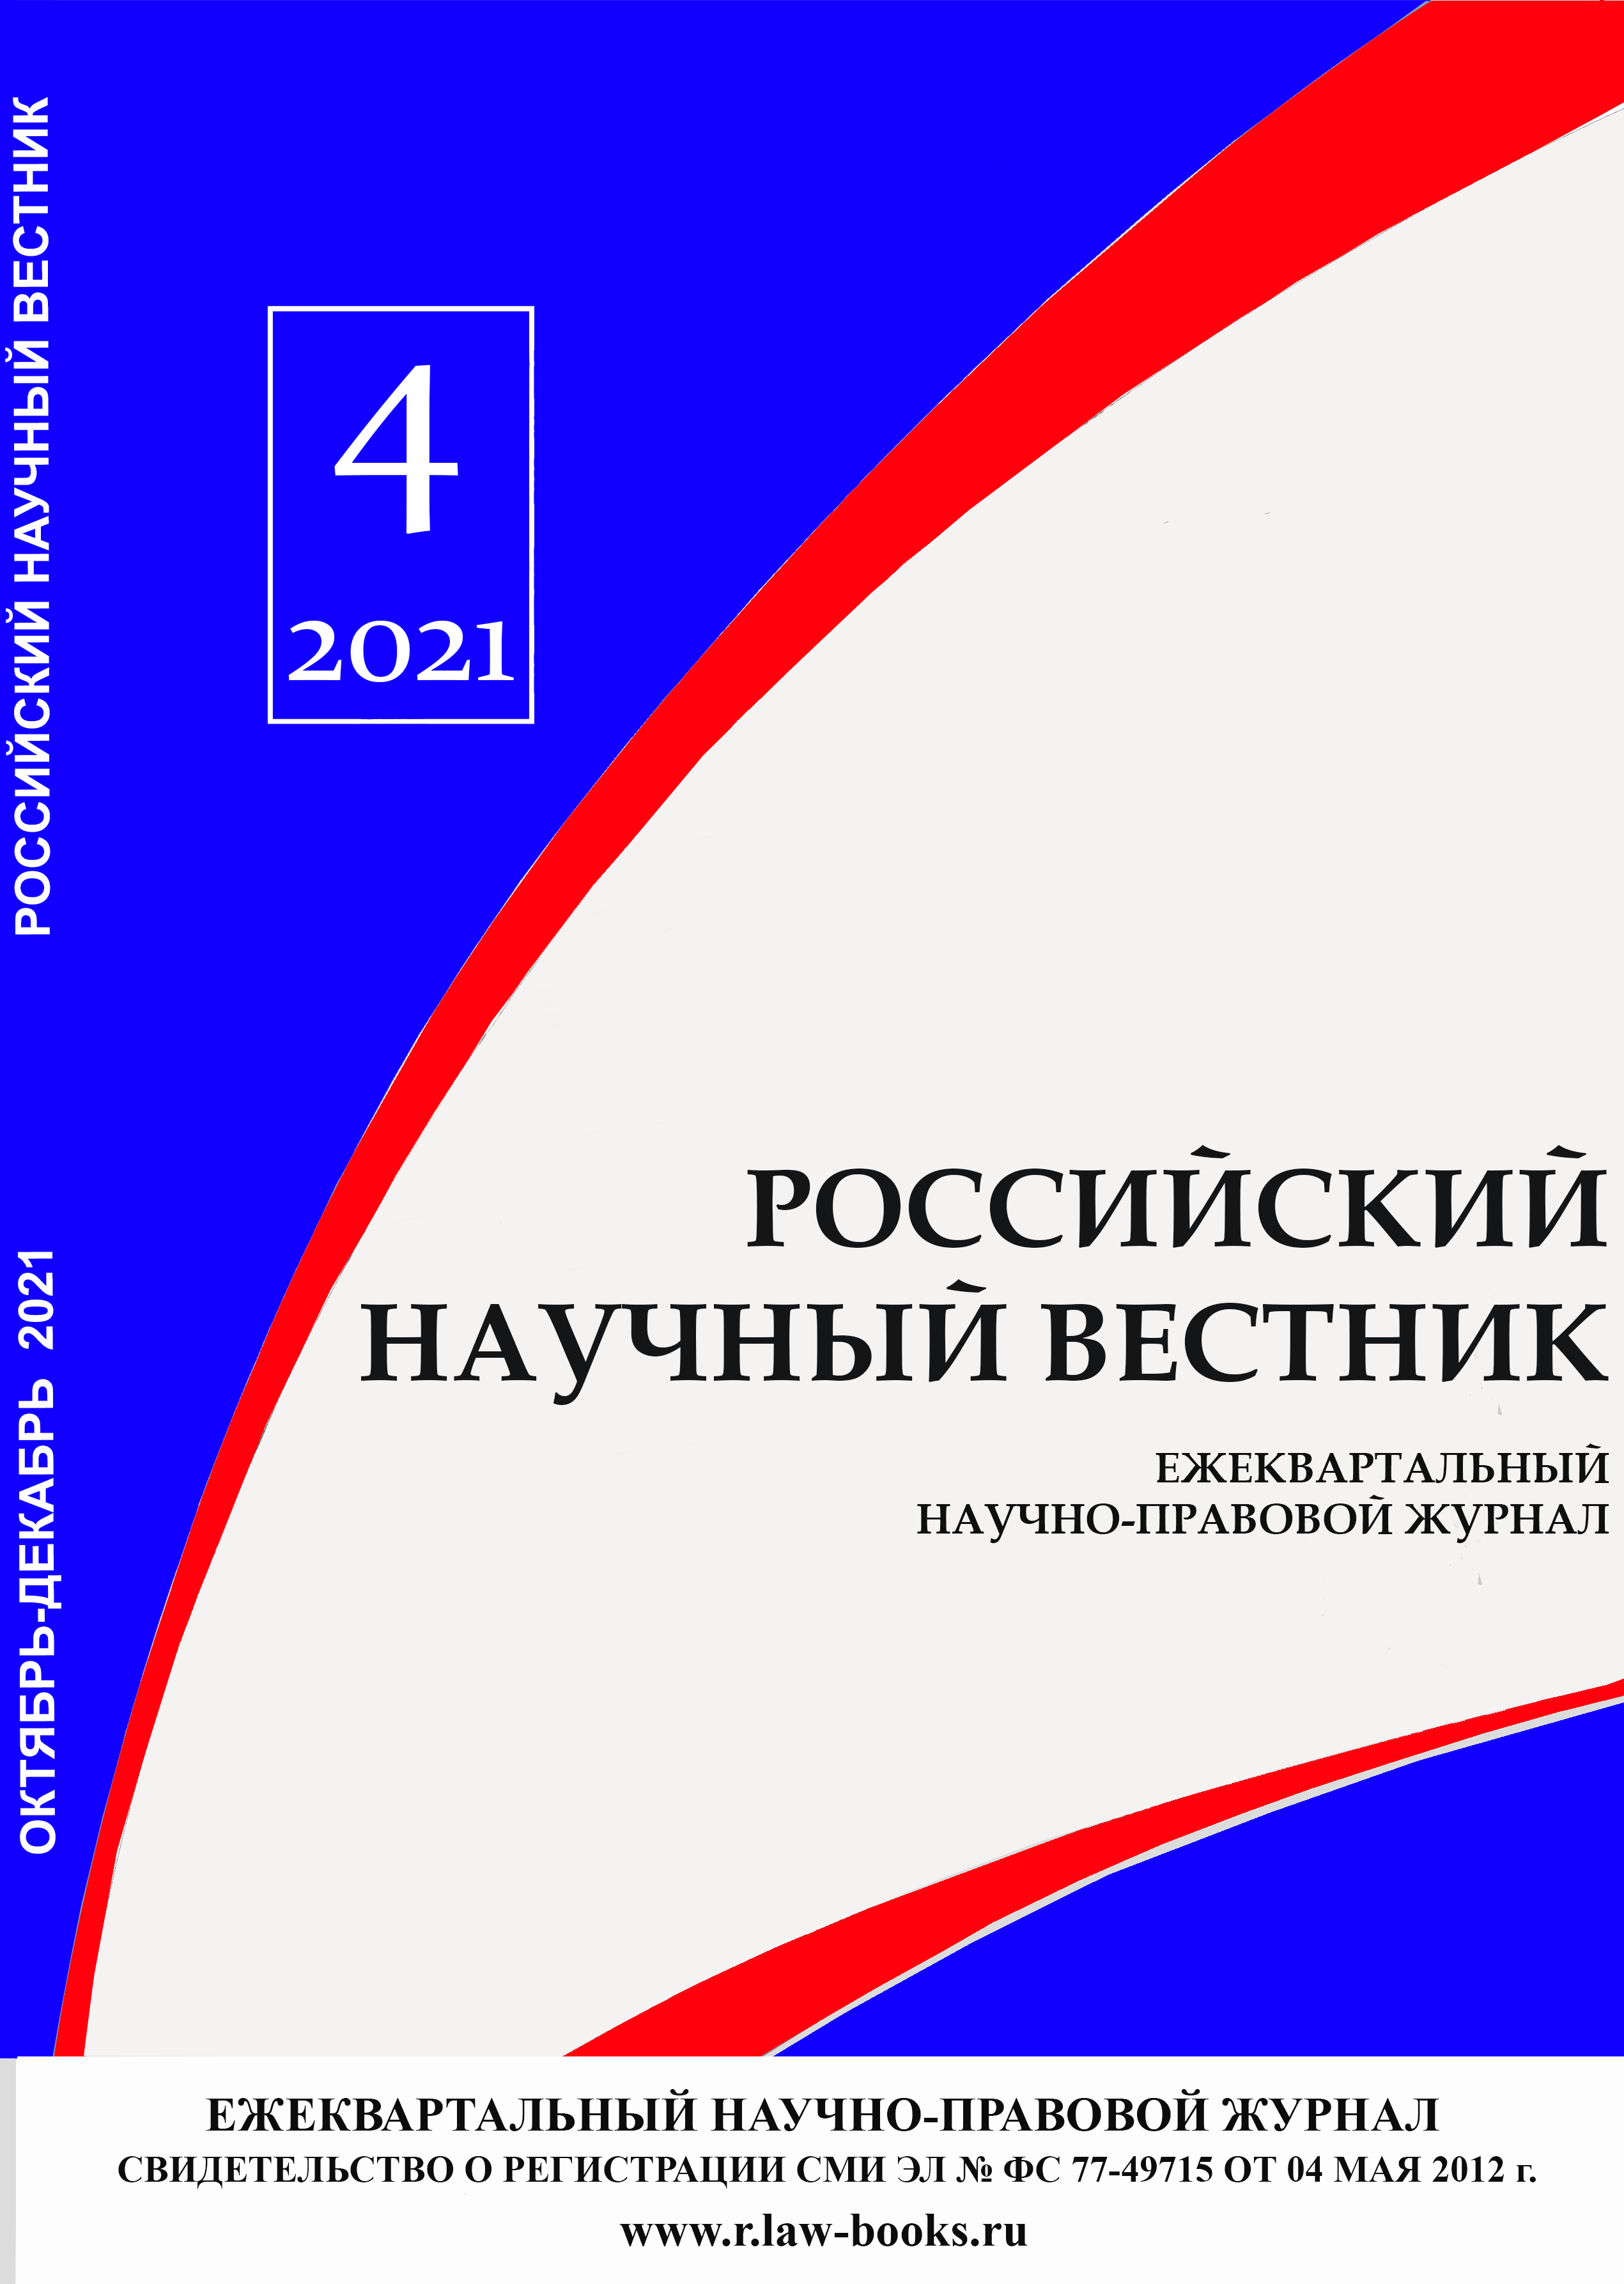 You are currently viewing Российский научный вестник № 4 2021